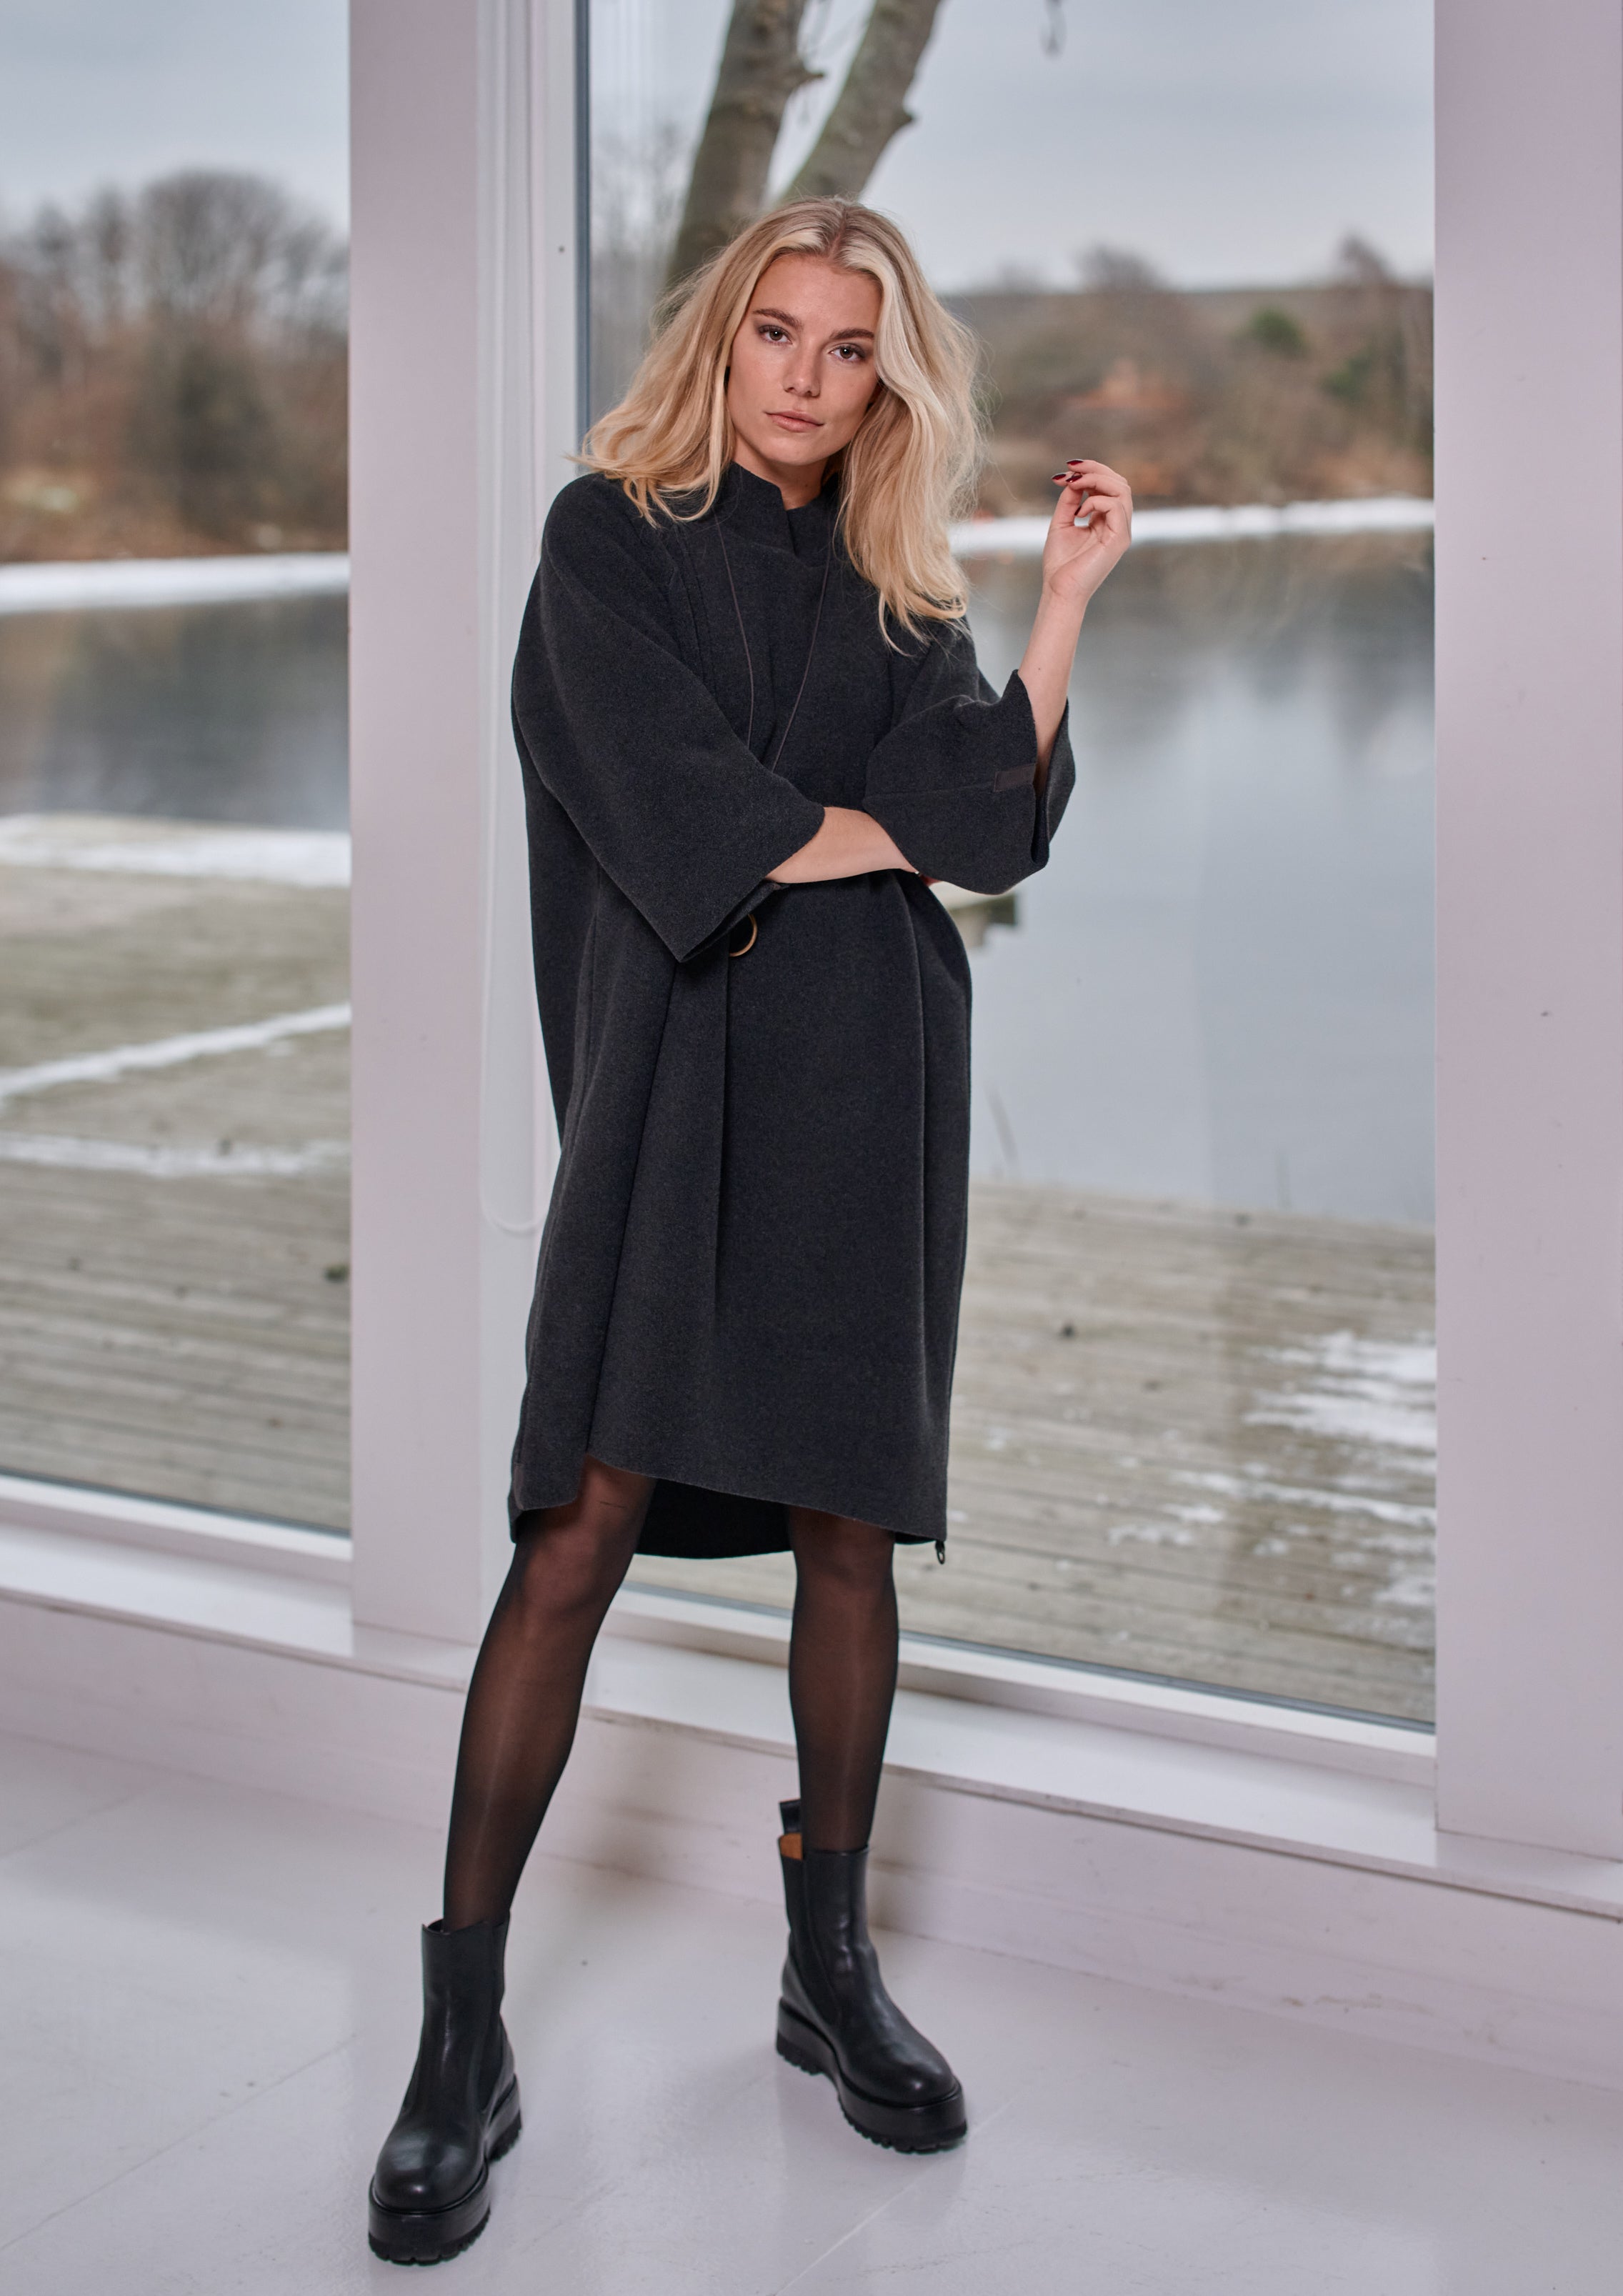 HENRIETTE STEFFENSEN COPENHAGEN DRESS HIGH NECK - 3243 DRESSES fleece SOFT BLACK 914